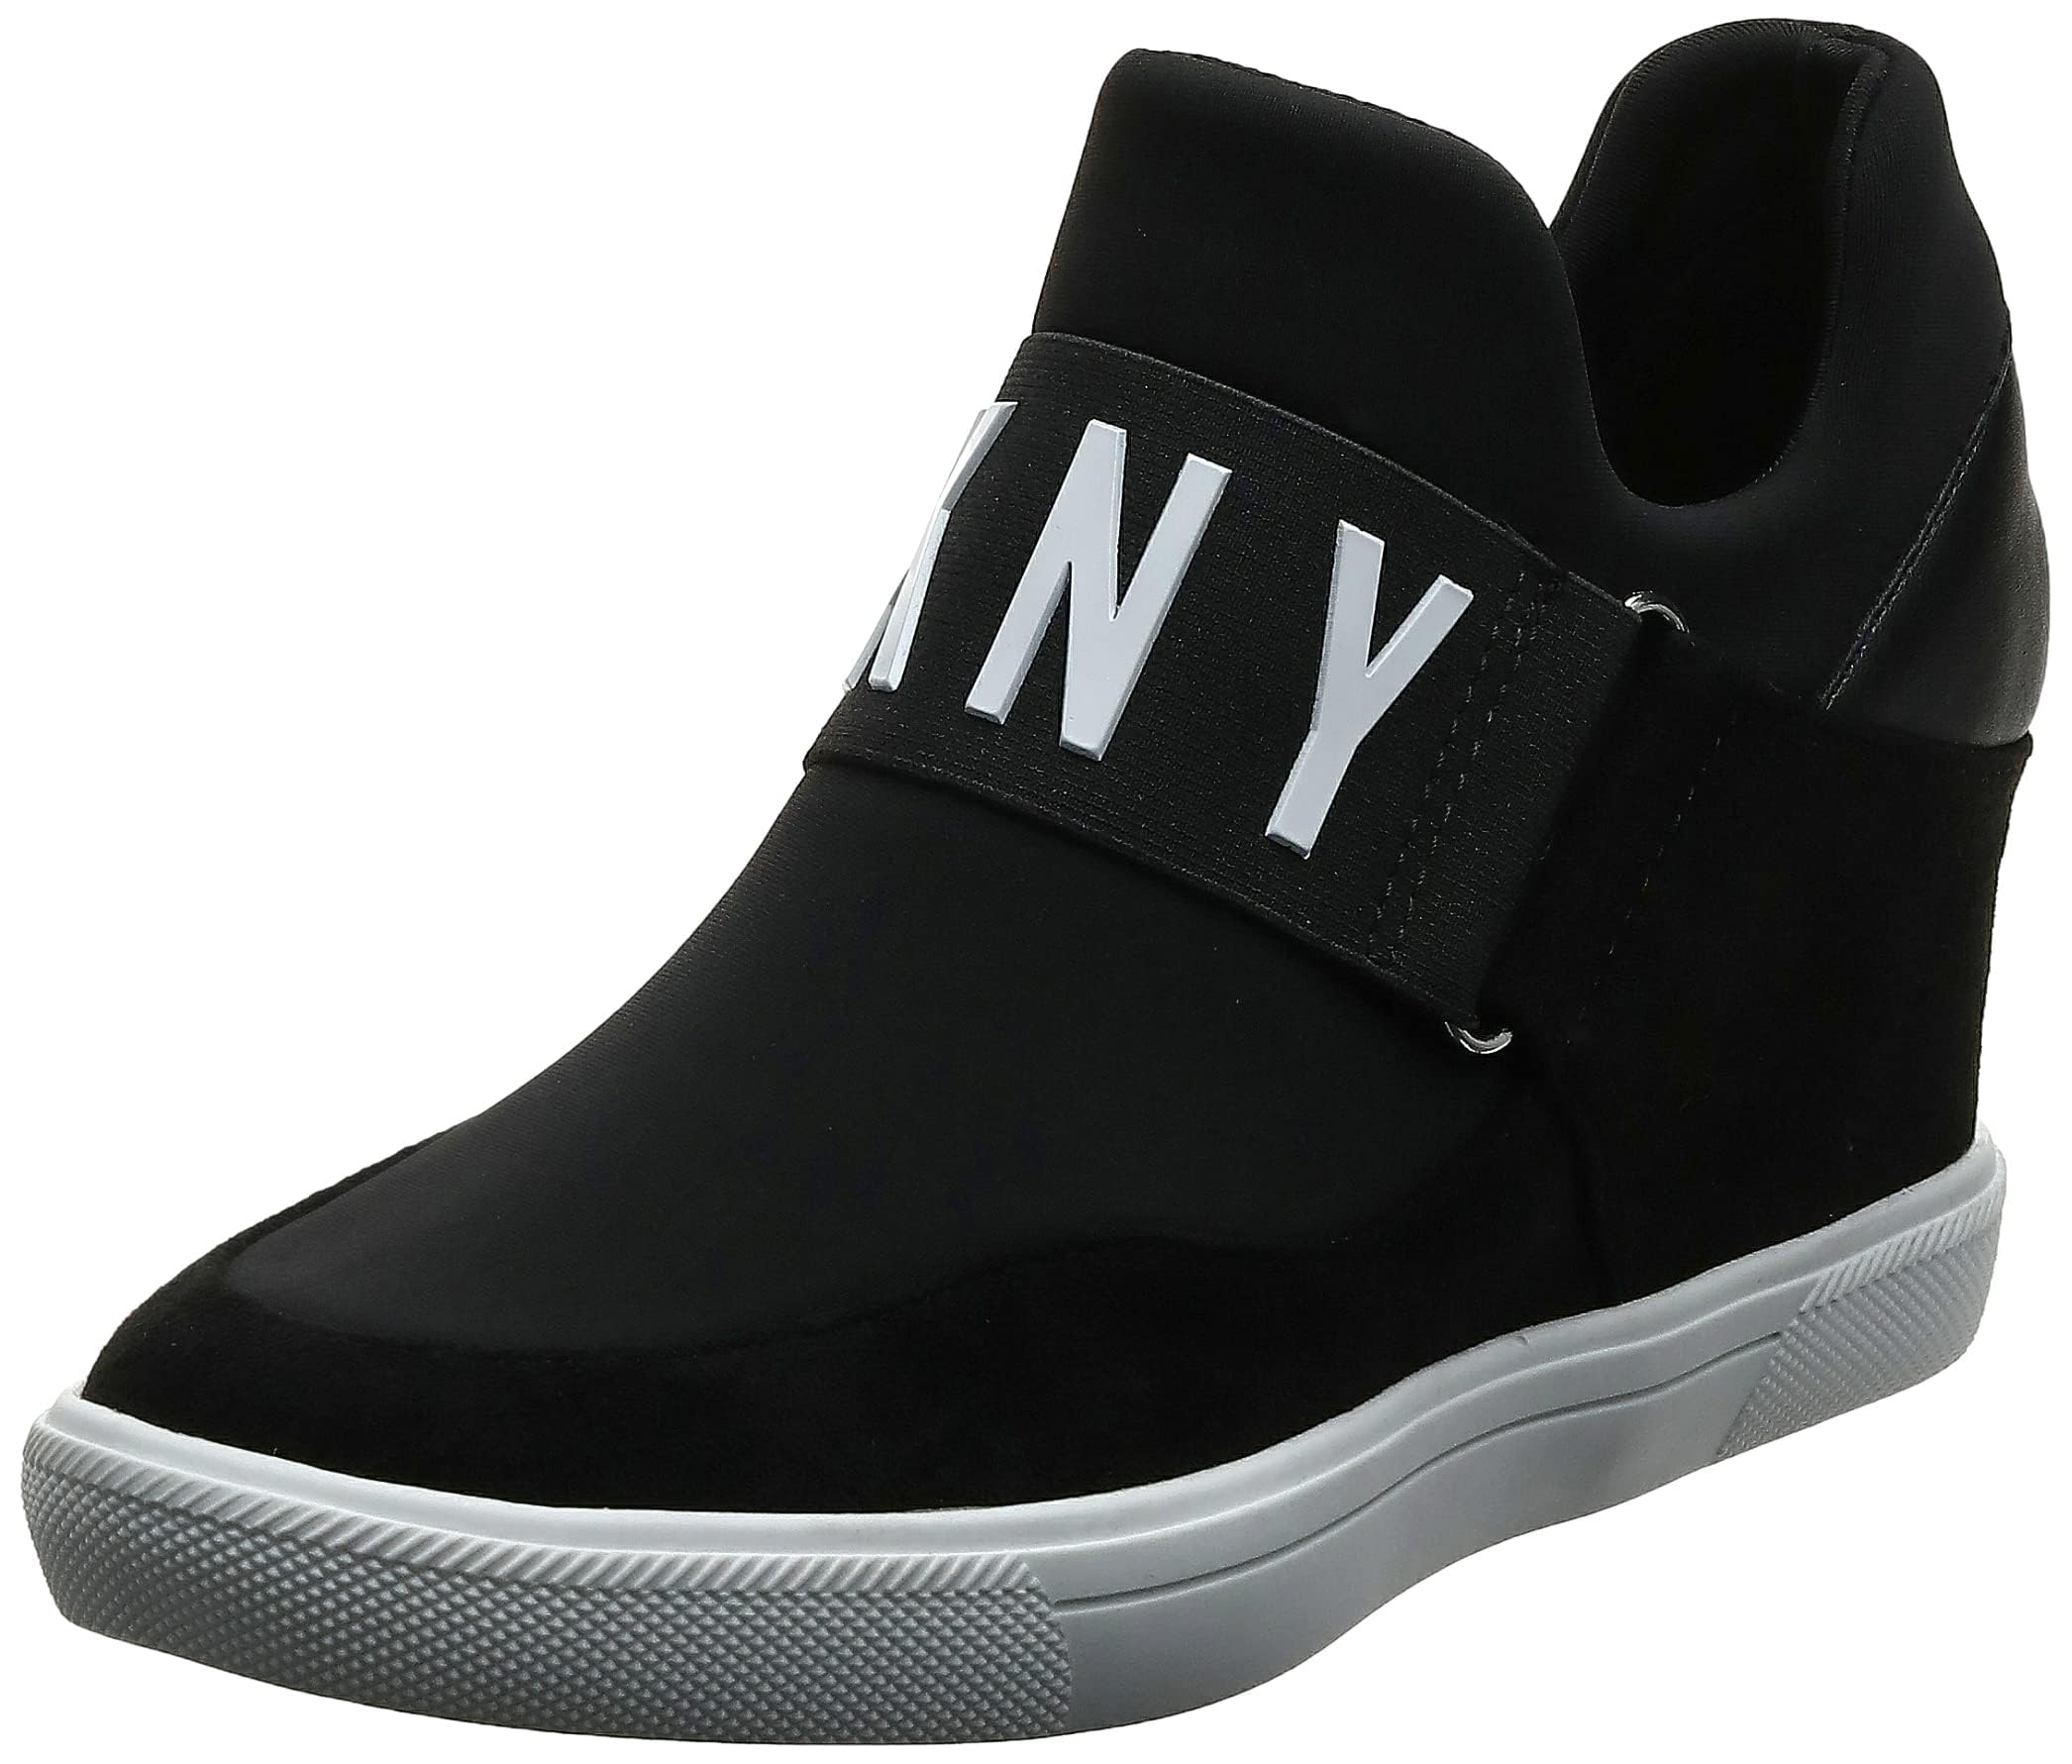 DKNY Women's Footwear COSMOS - WEDGE SNEAKER,BLACK, 6.5